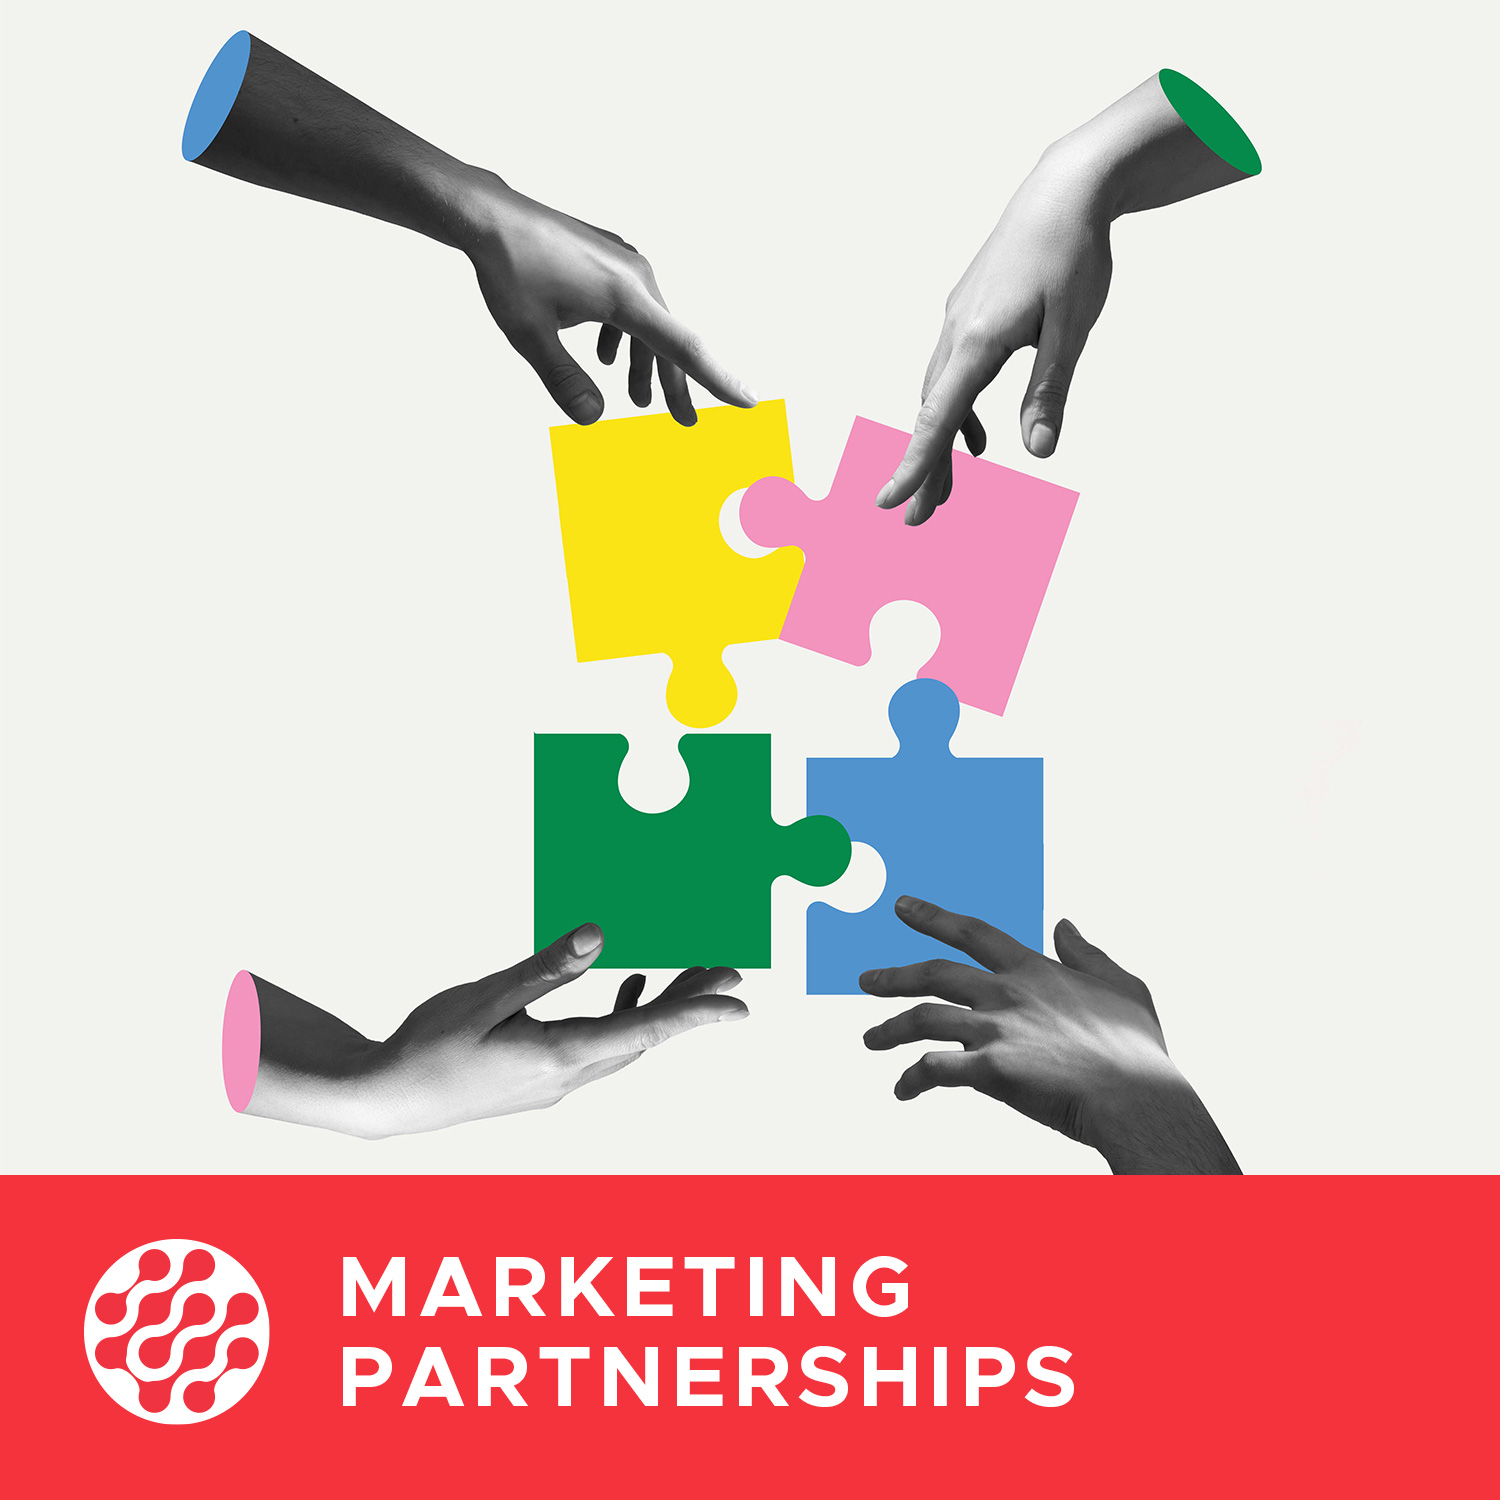 Marketing Partnerships